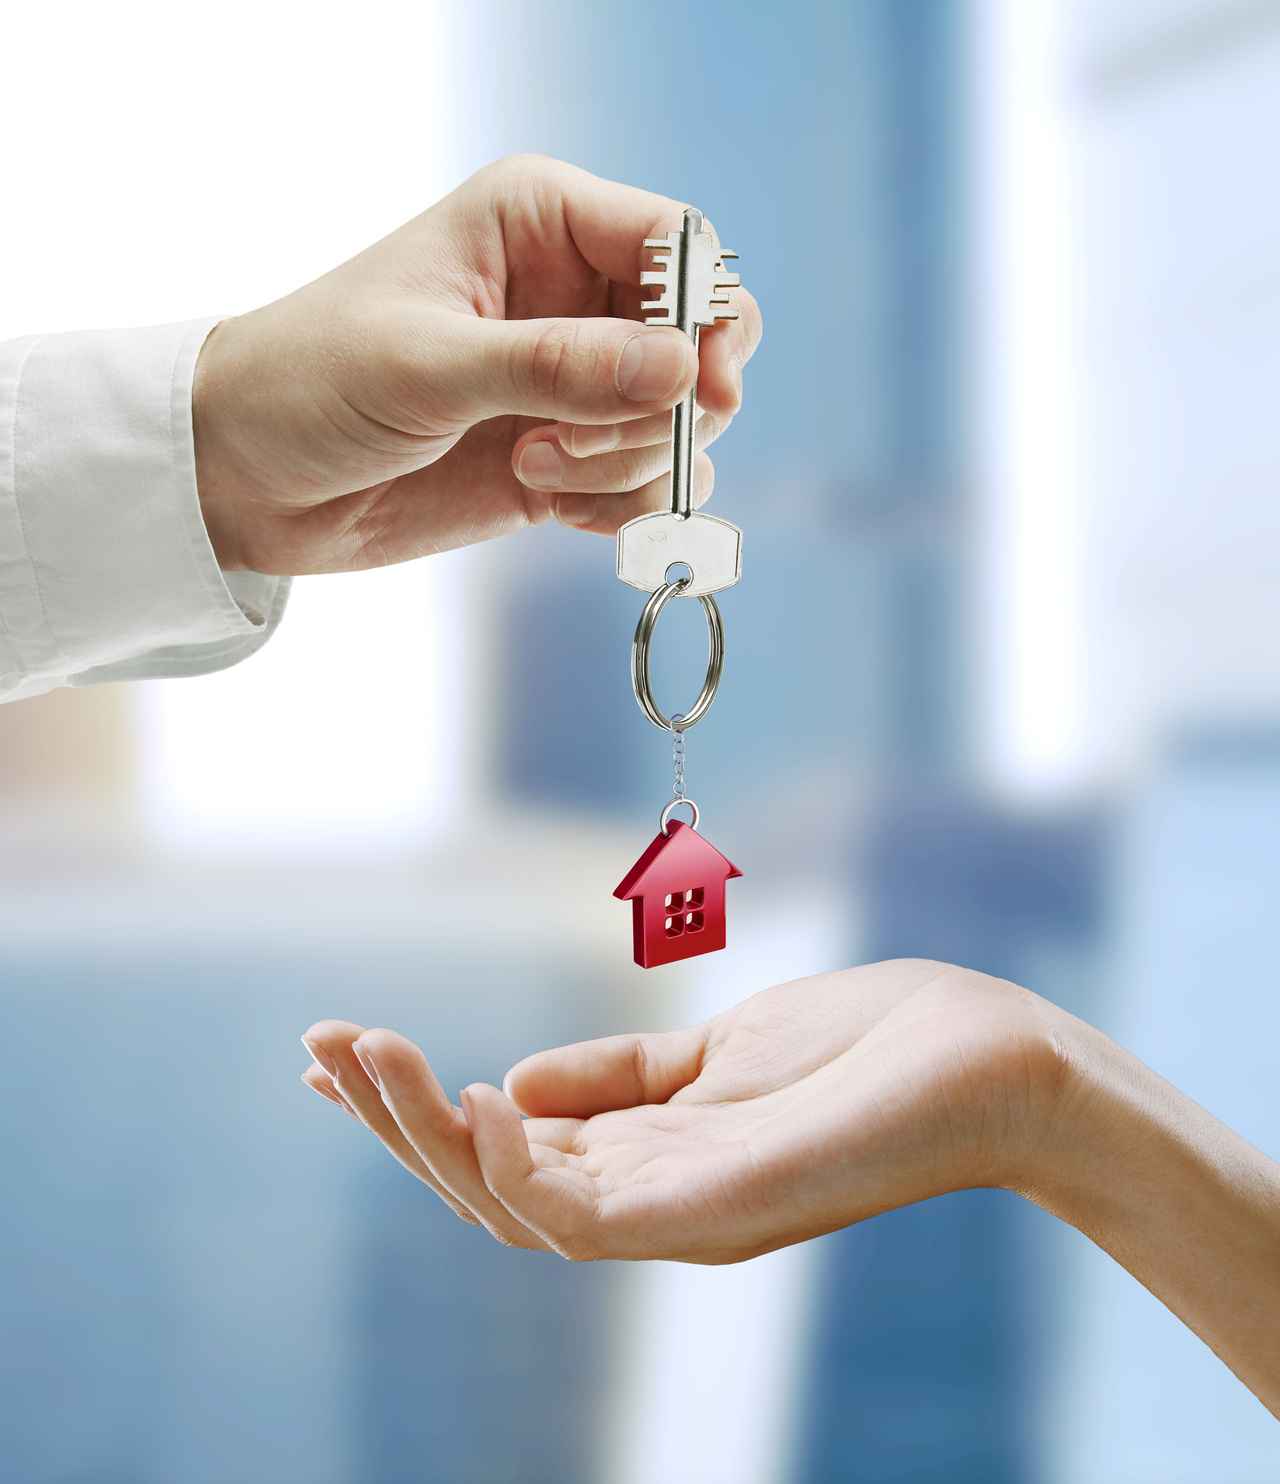 Ситуация на рынке недвижимости или реально ли накопить деньги на квартиру простому смертному